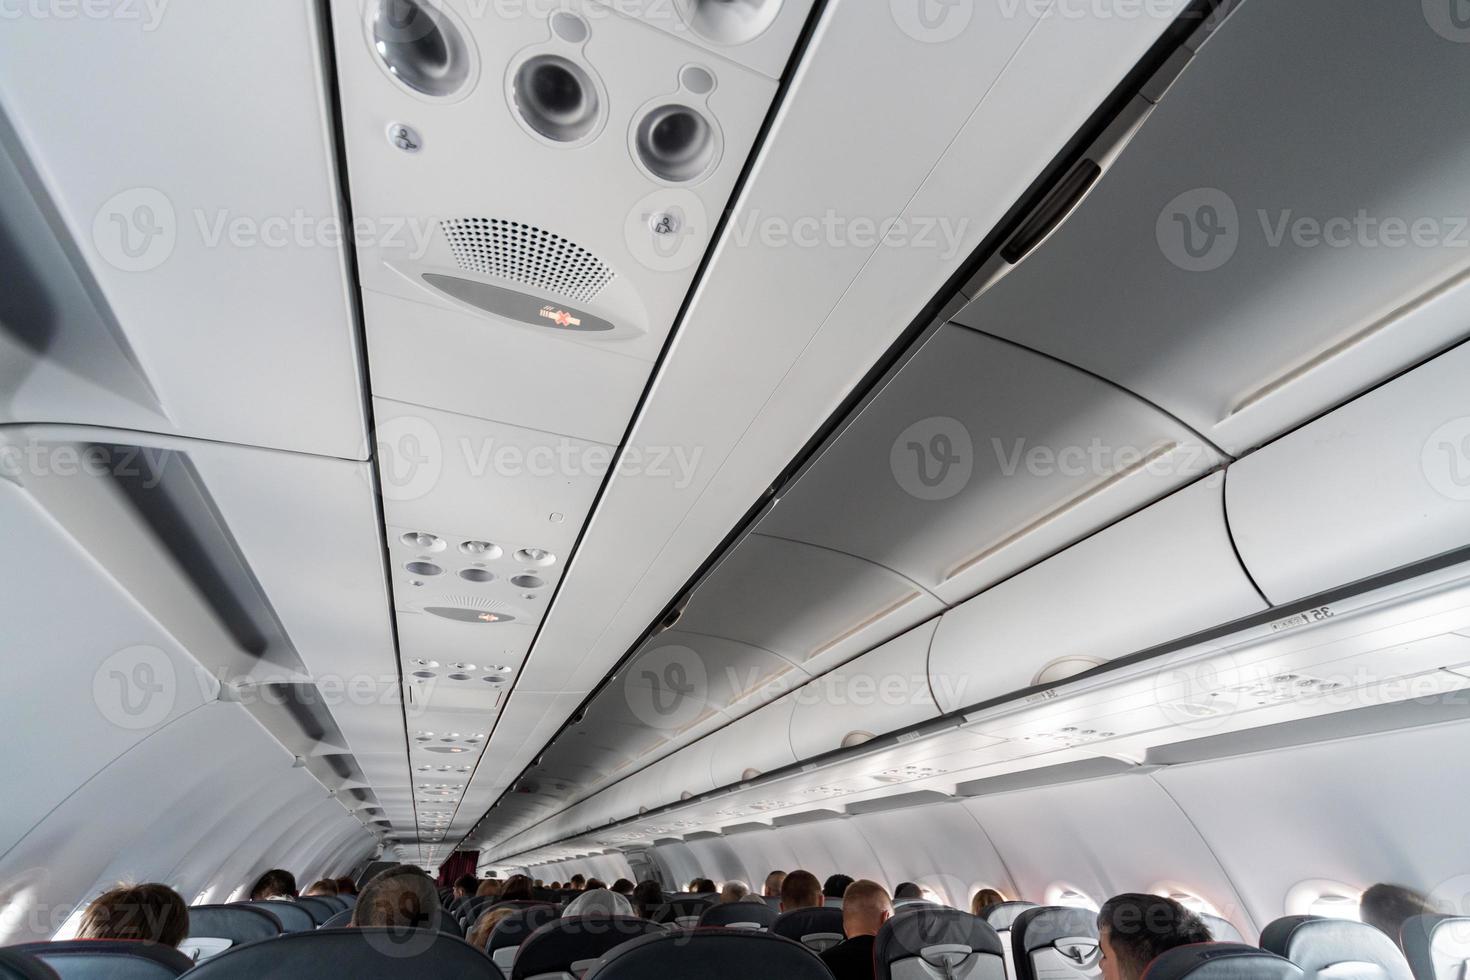 flygplans luftkonditioneringskontrollpanel över sätena. kvav luft i flygplanskabin med människor. nytt lågprisflygbolag foto